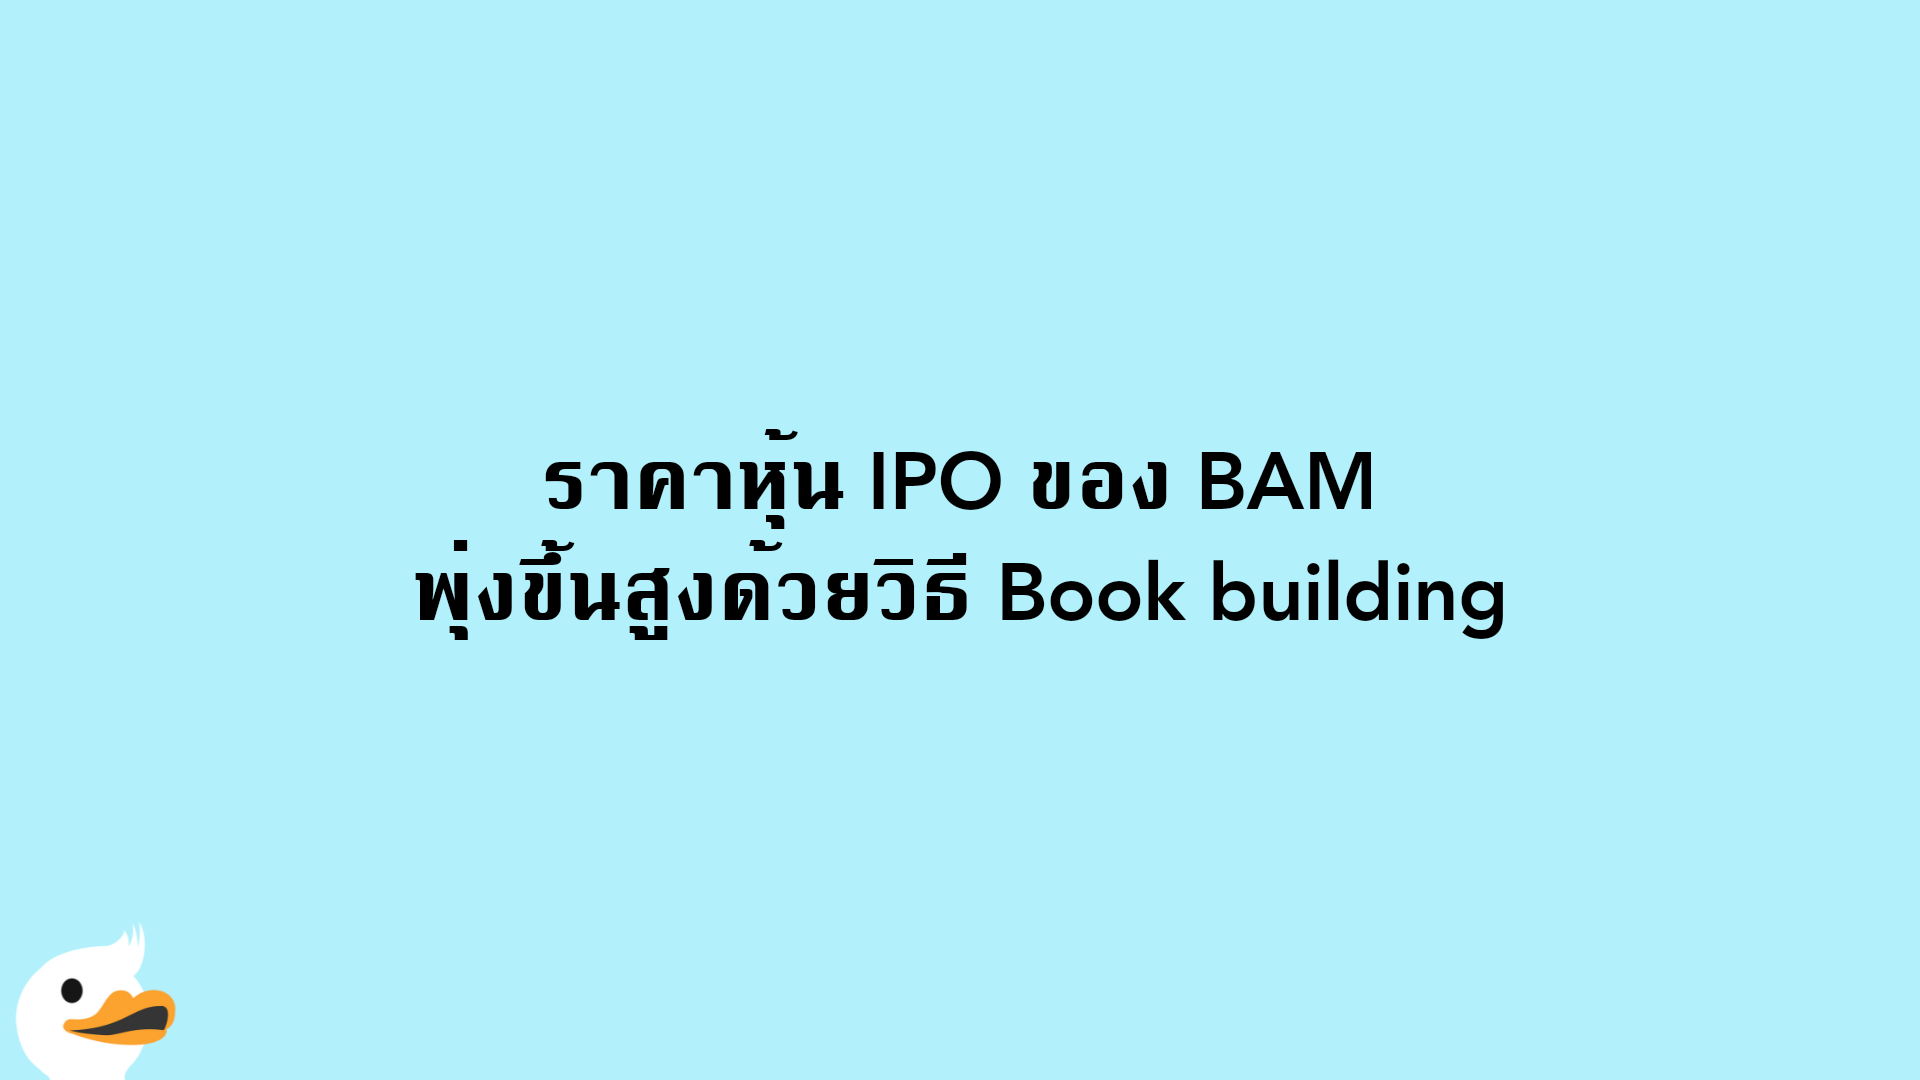 ราคาหุ้น IPO ของ BAM พุ่งขึ้นสูงด้วยวิธี Book building